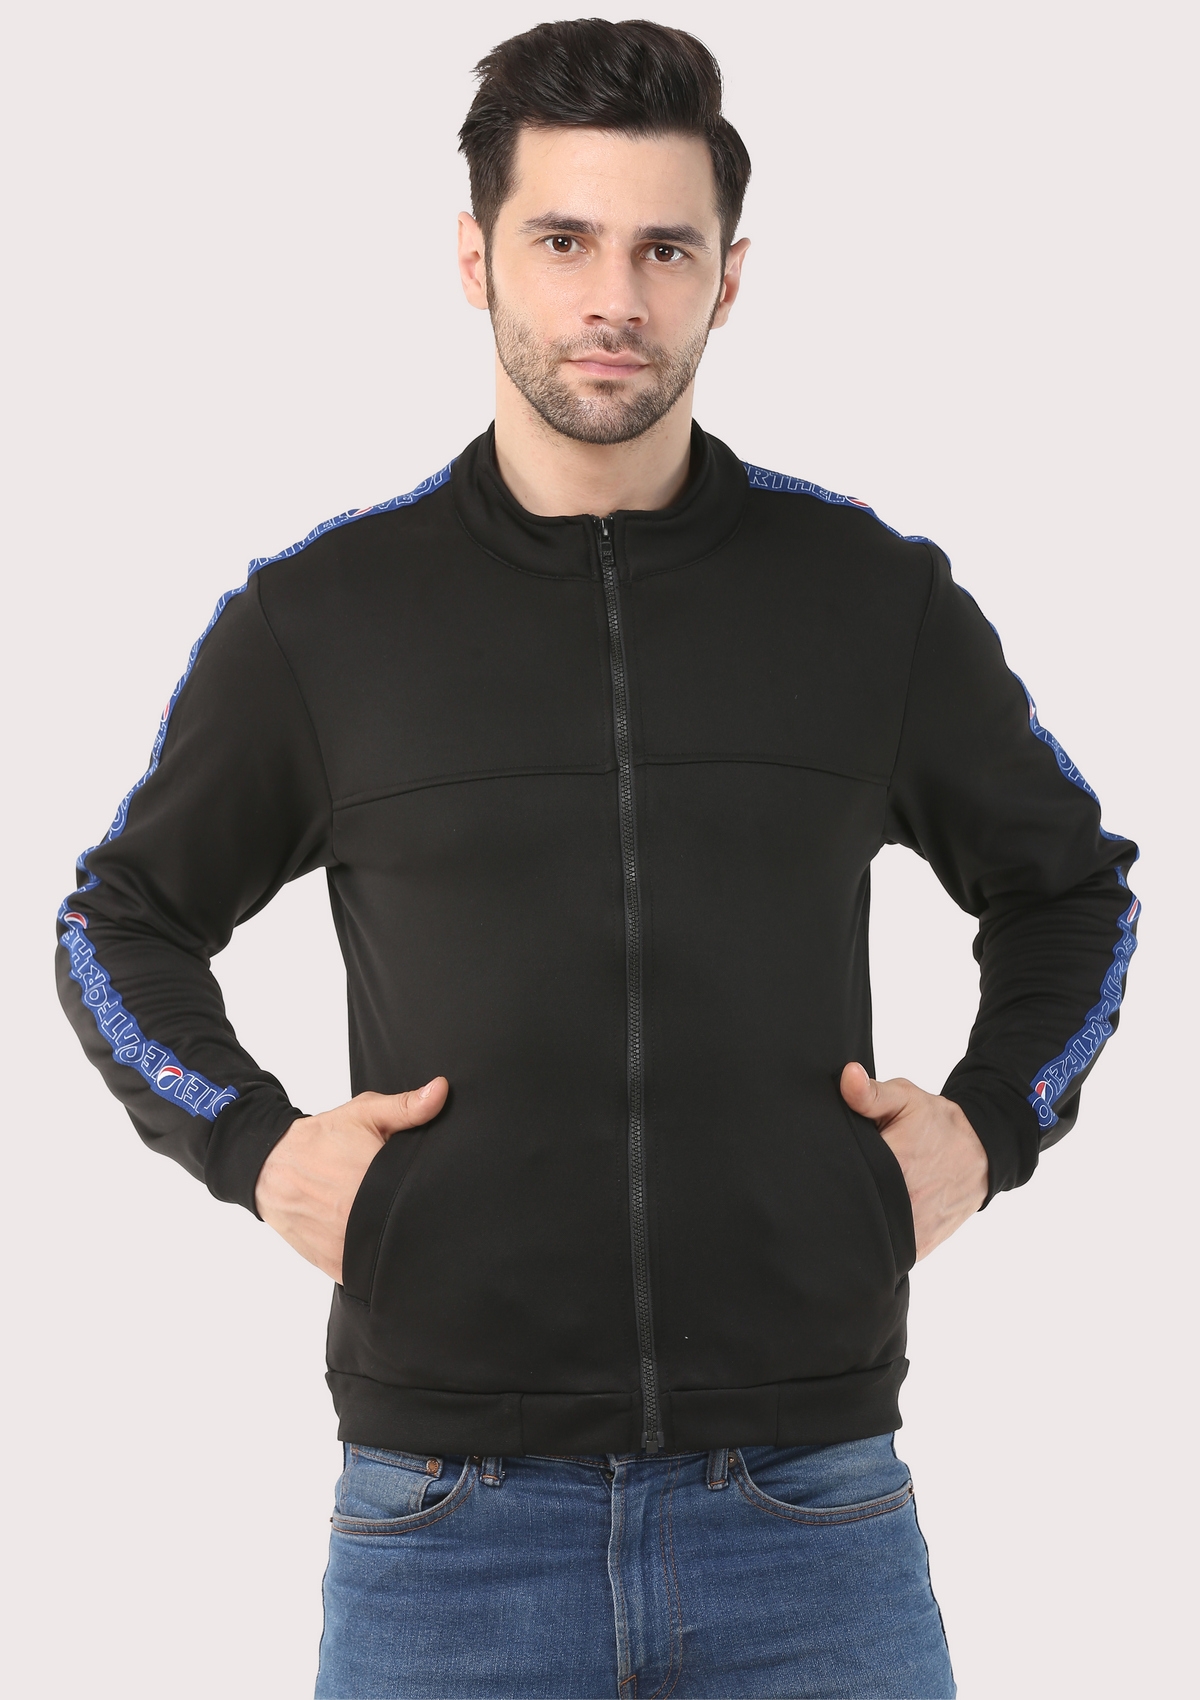 SOC Smart , Stylish & Warm Fleece Jacket